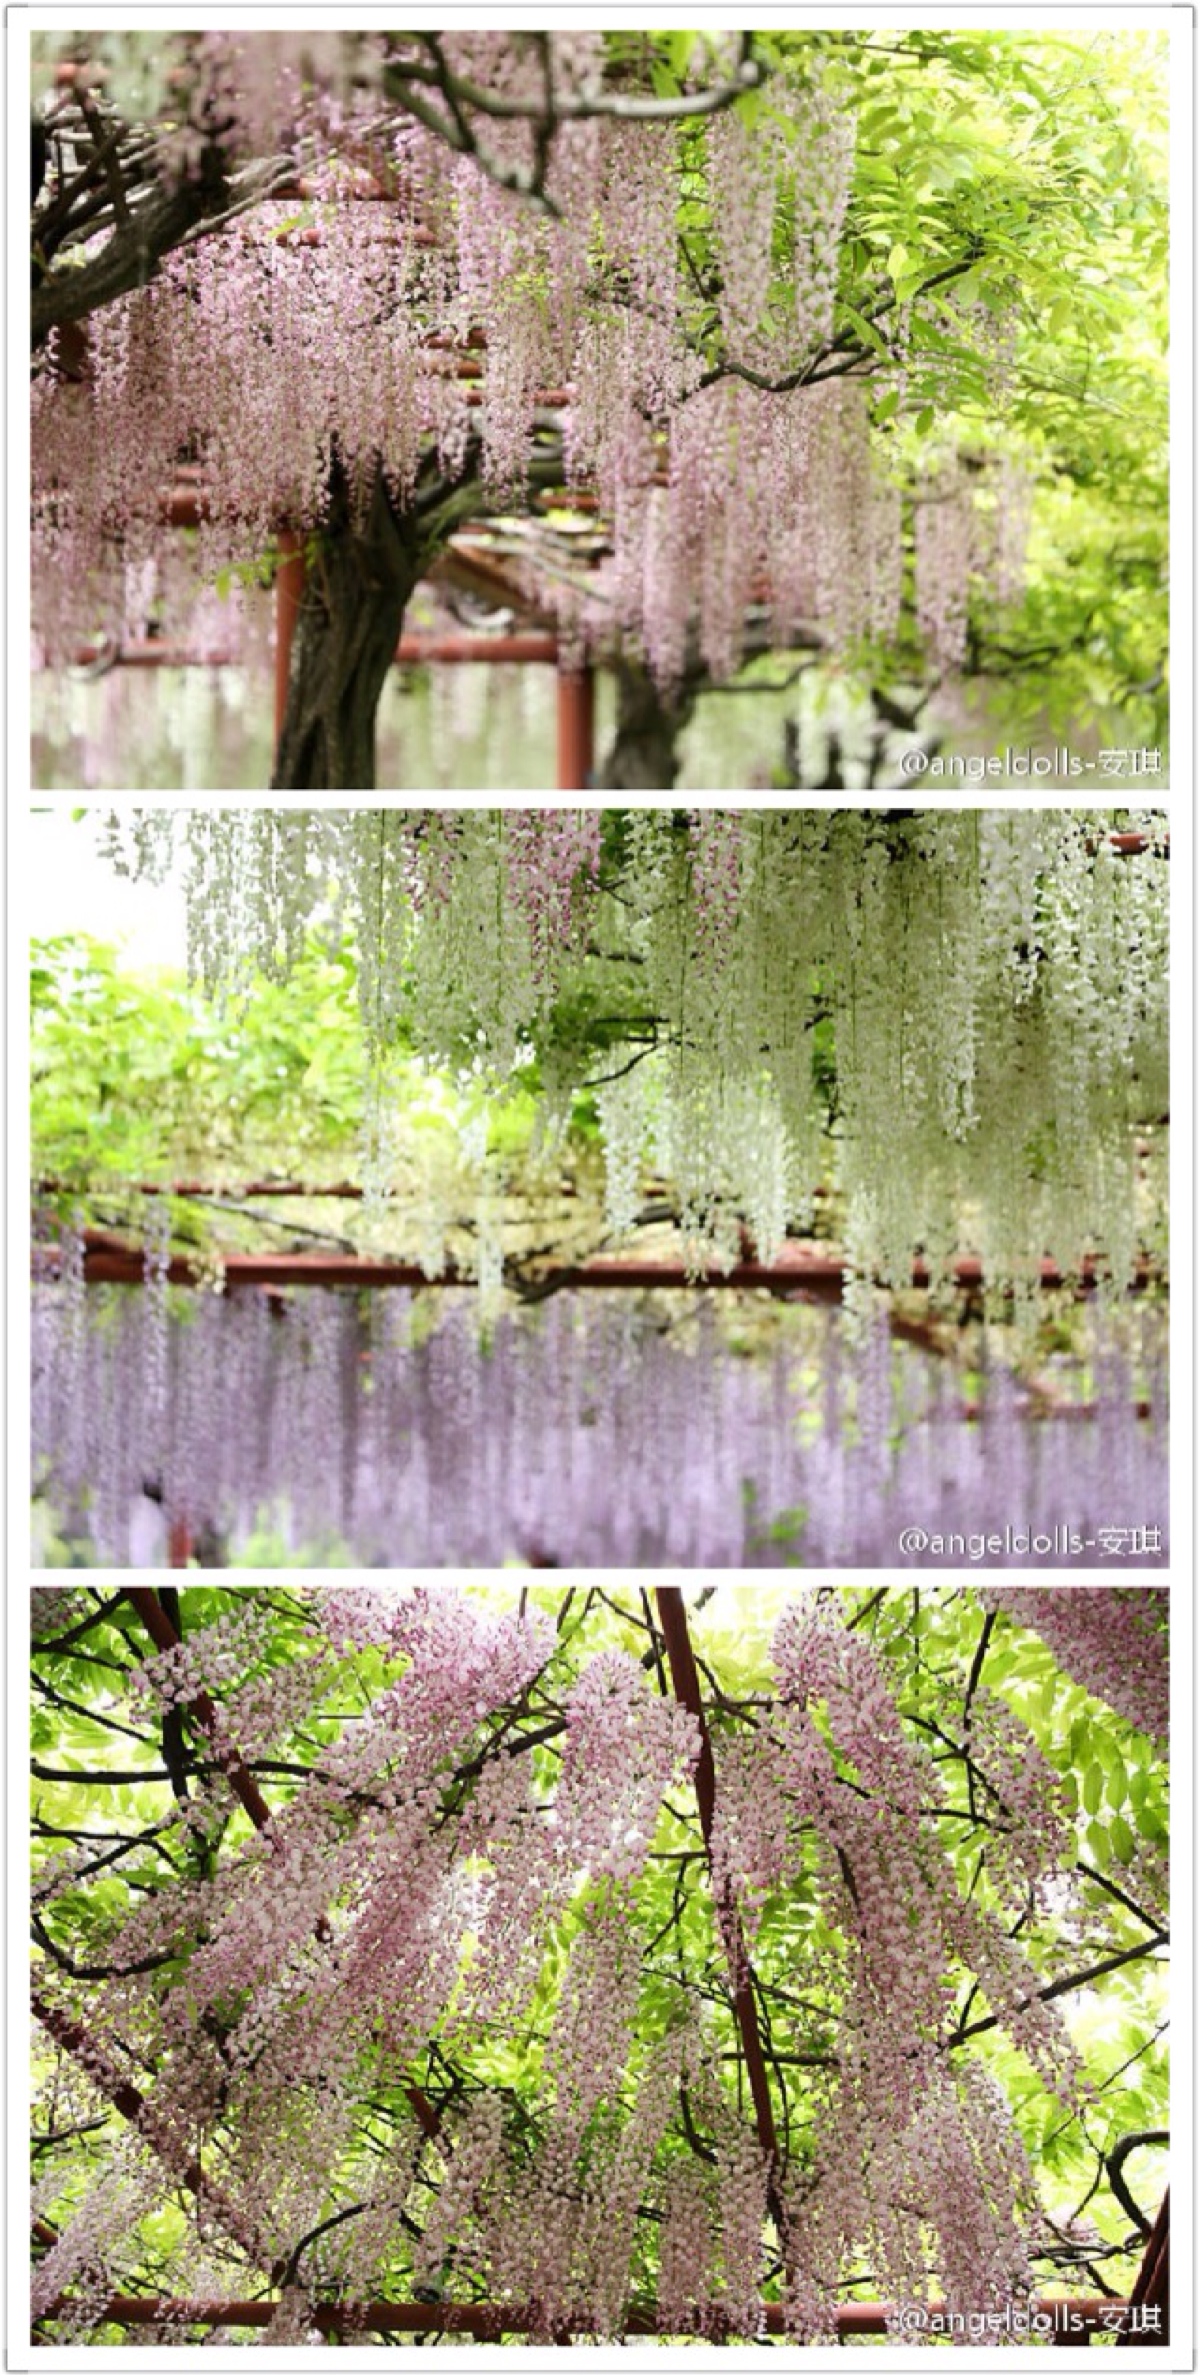 上海嘉定紫藤园步入盛花期 - 植保 - 园林网